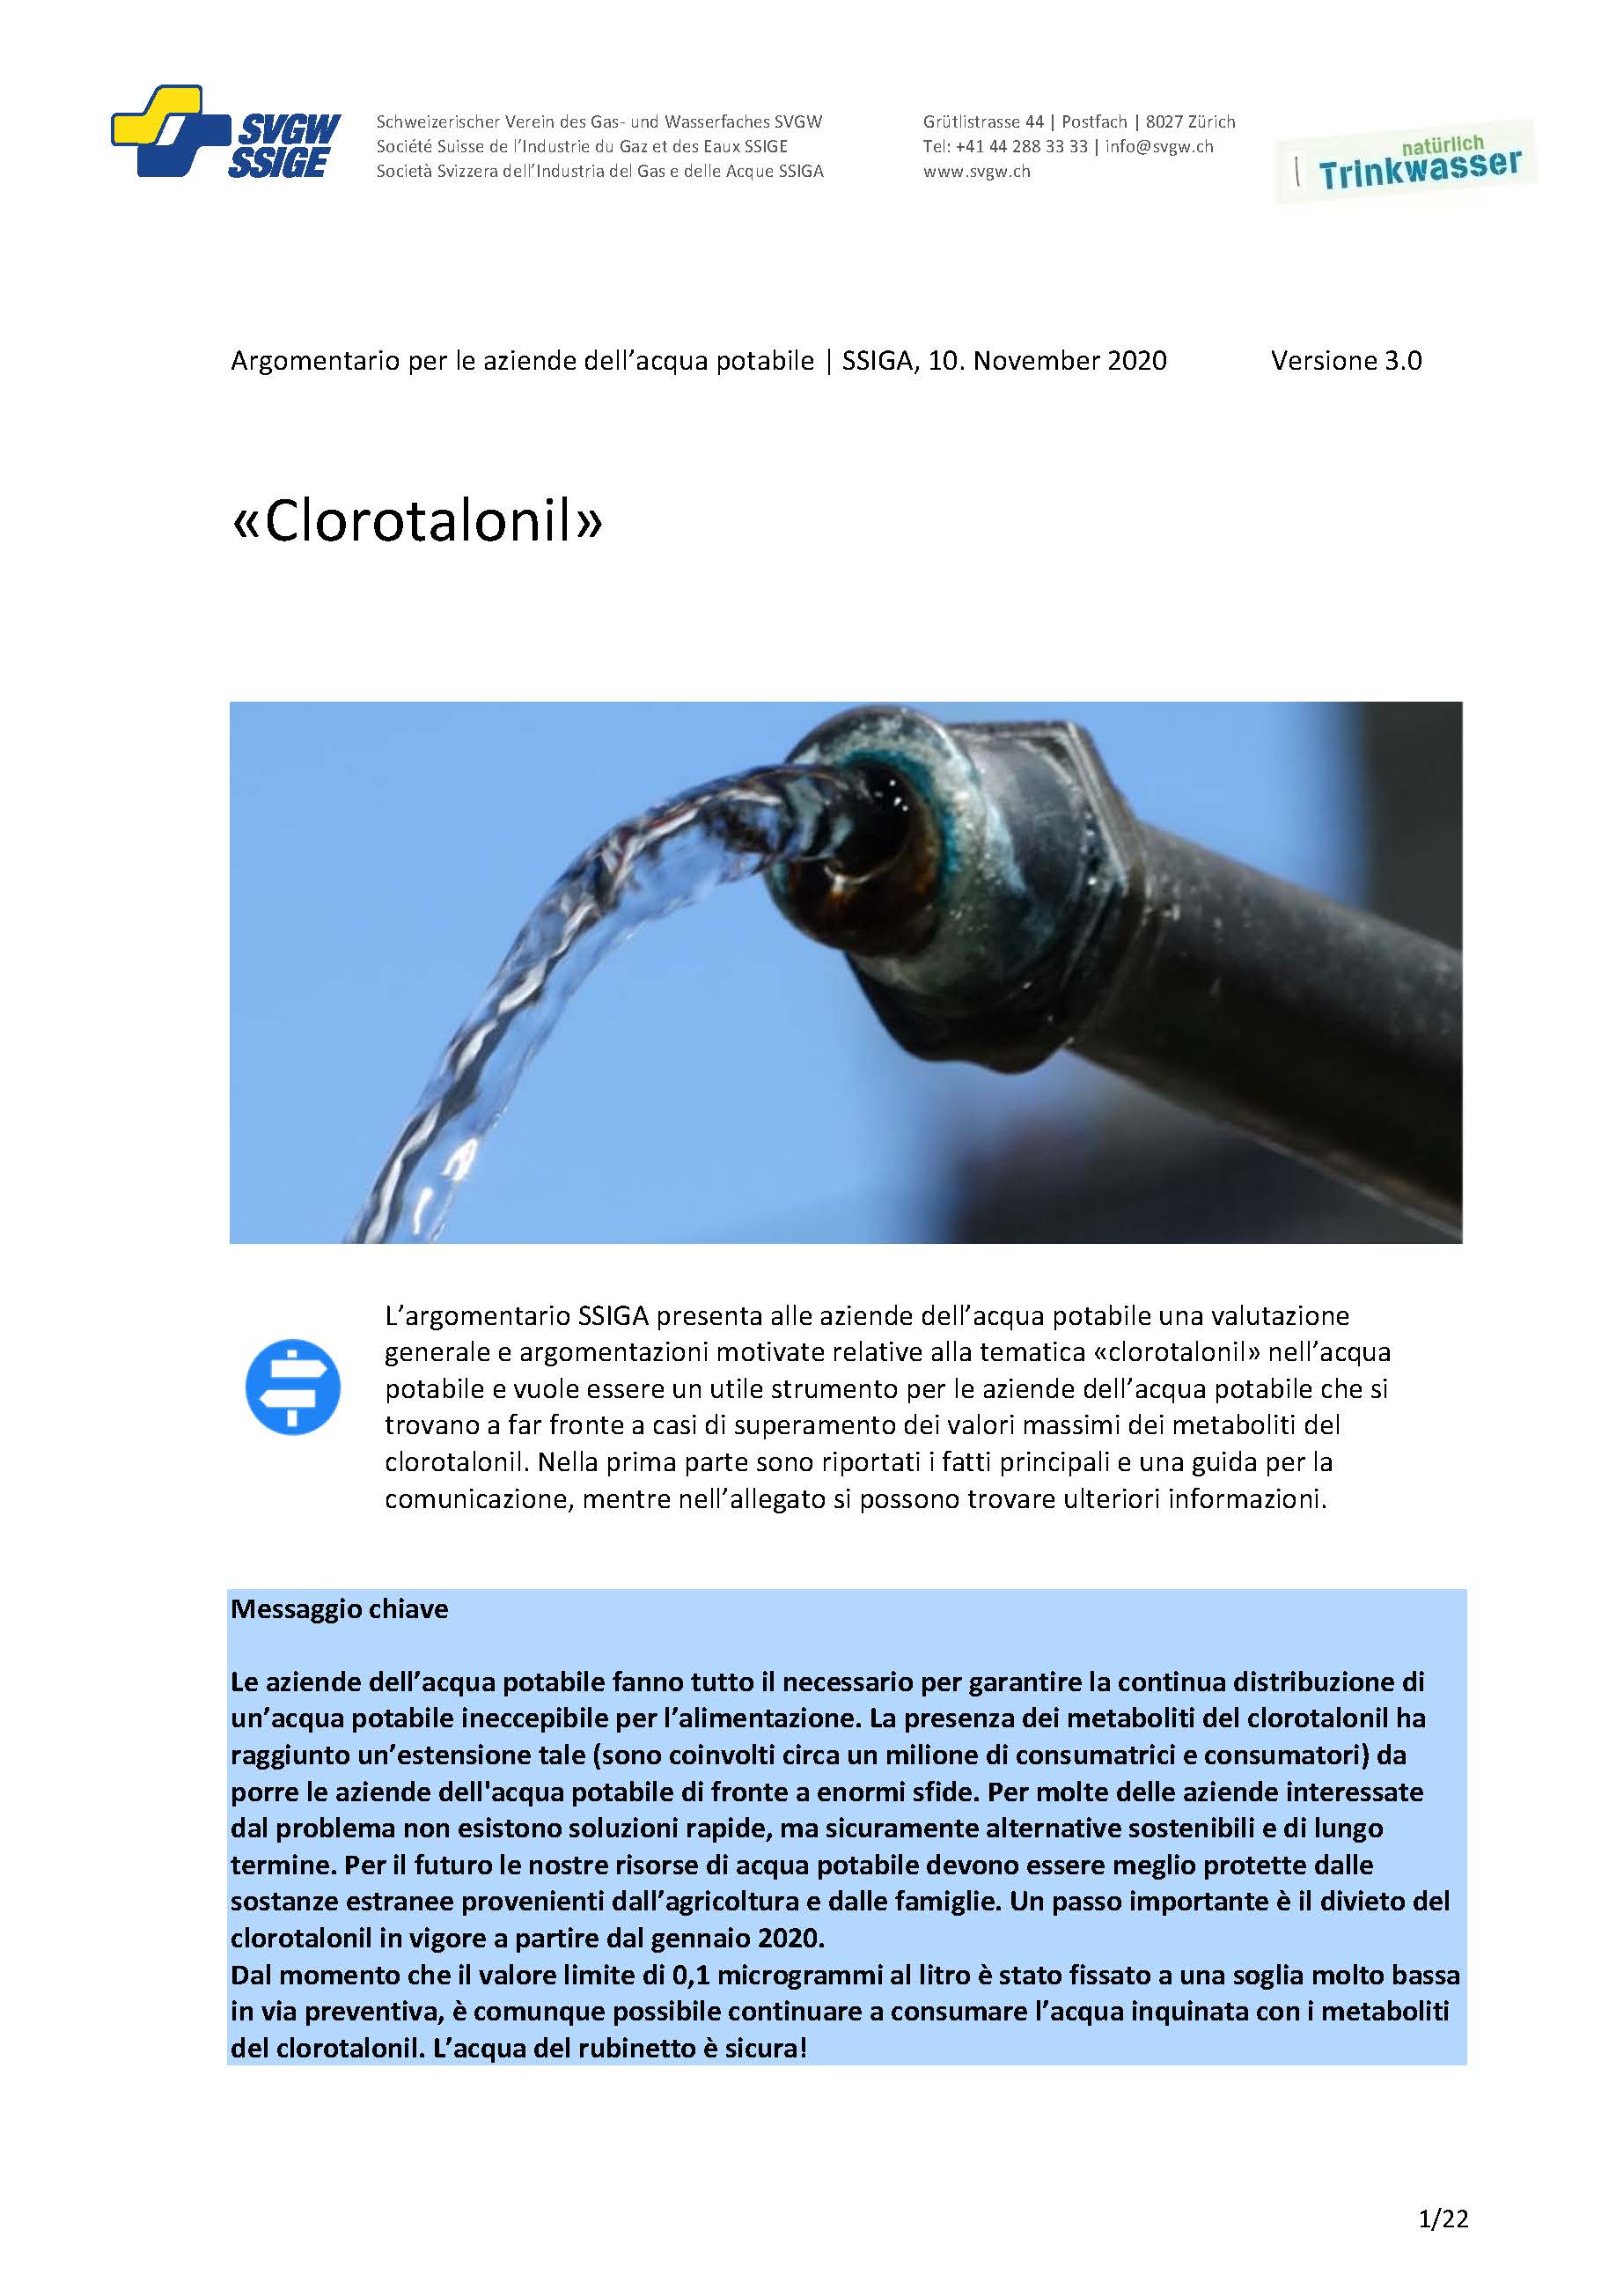 Argomentazione: «Clorotalonil»